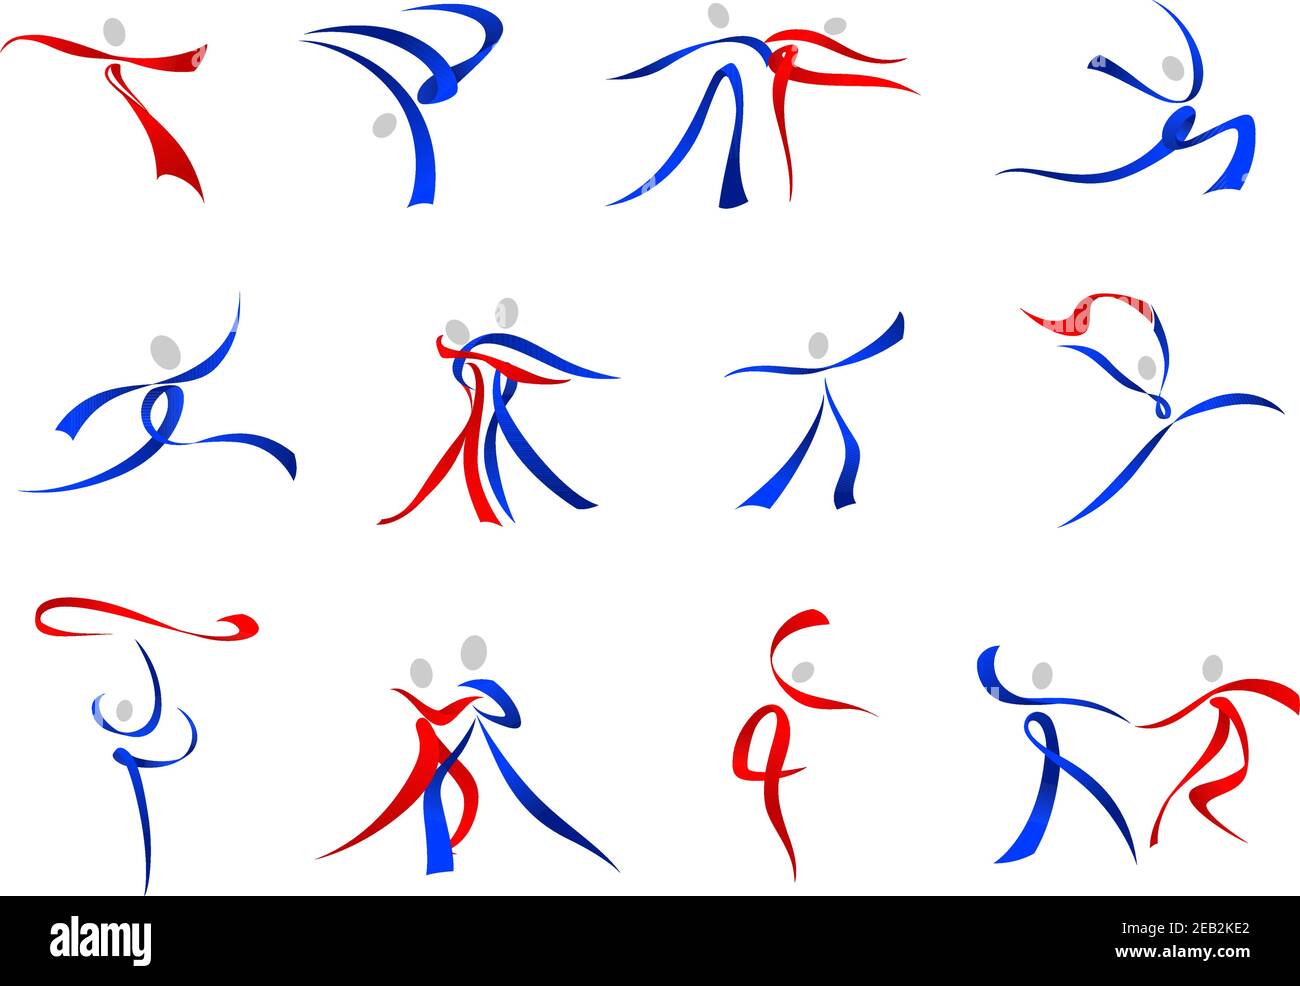 Symboles modernes stylisés et fluides des danseurs en rouge et bleu une variété de poses de danse Illustration de Vecteur